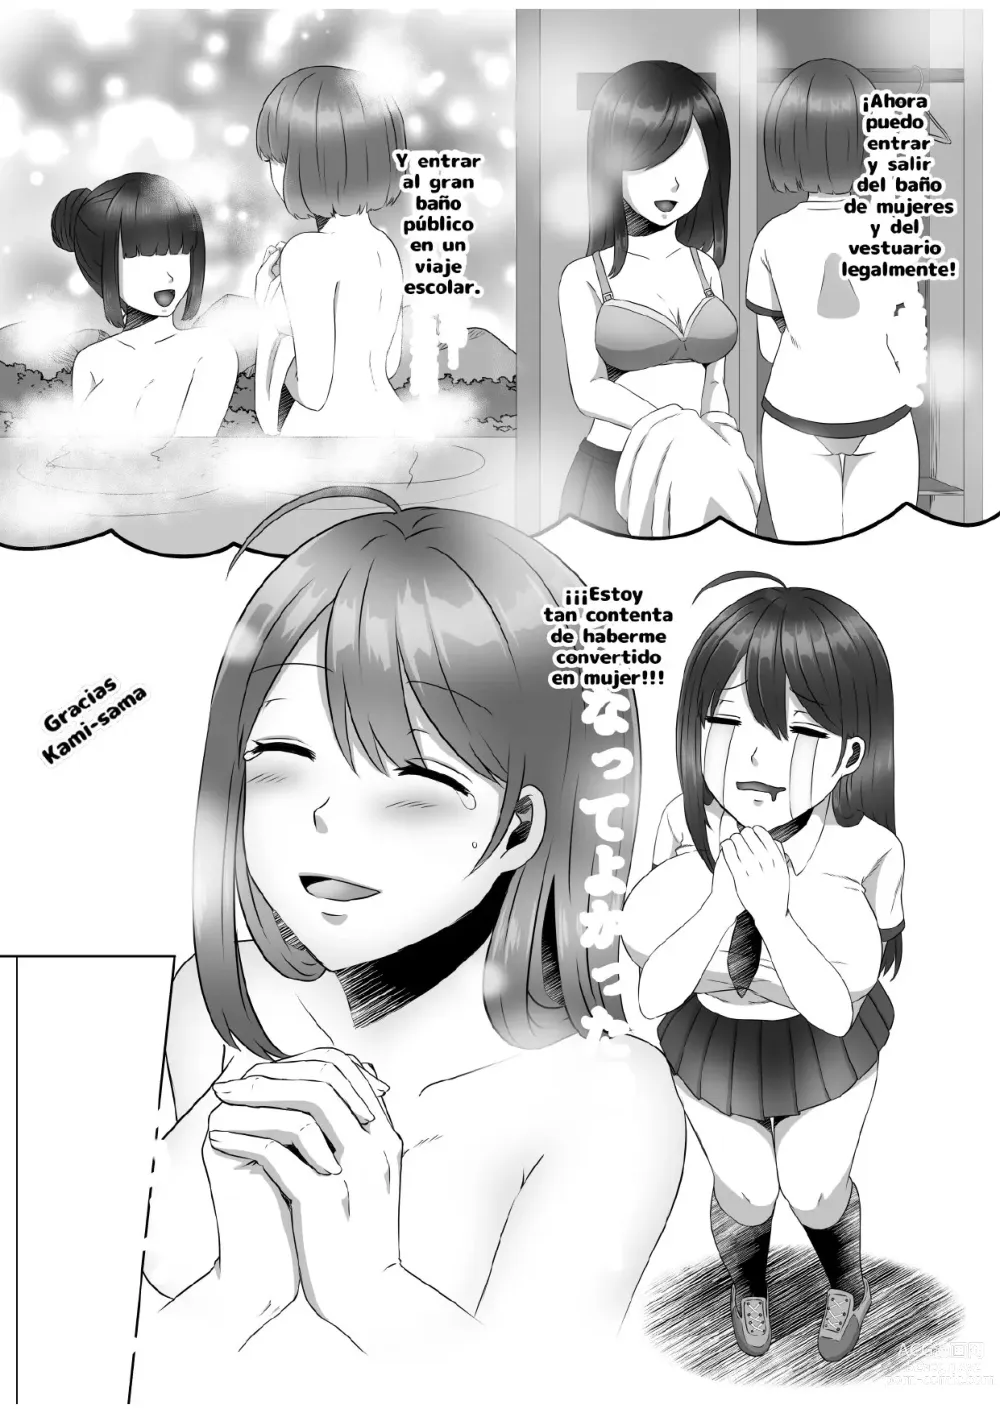 Page 8 of doujinshi ¿Porque me convertí en una mujer?